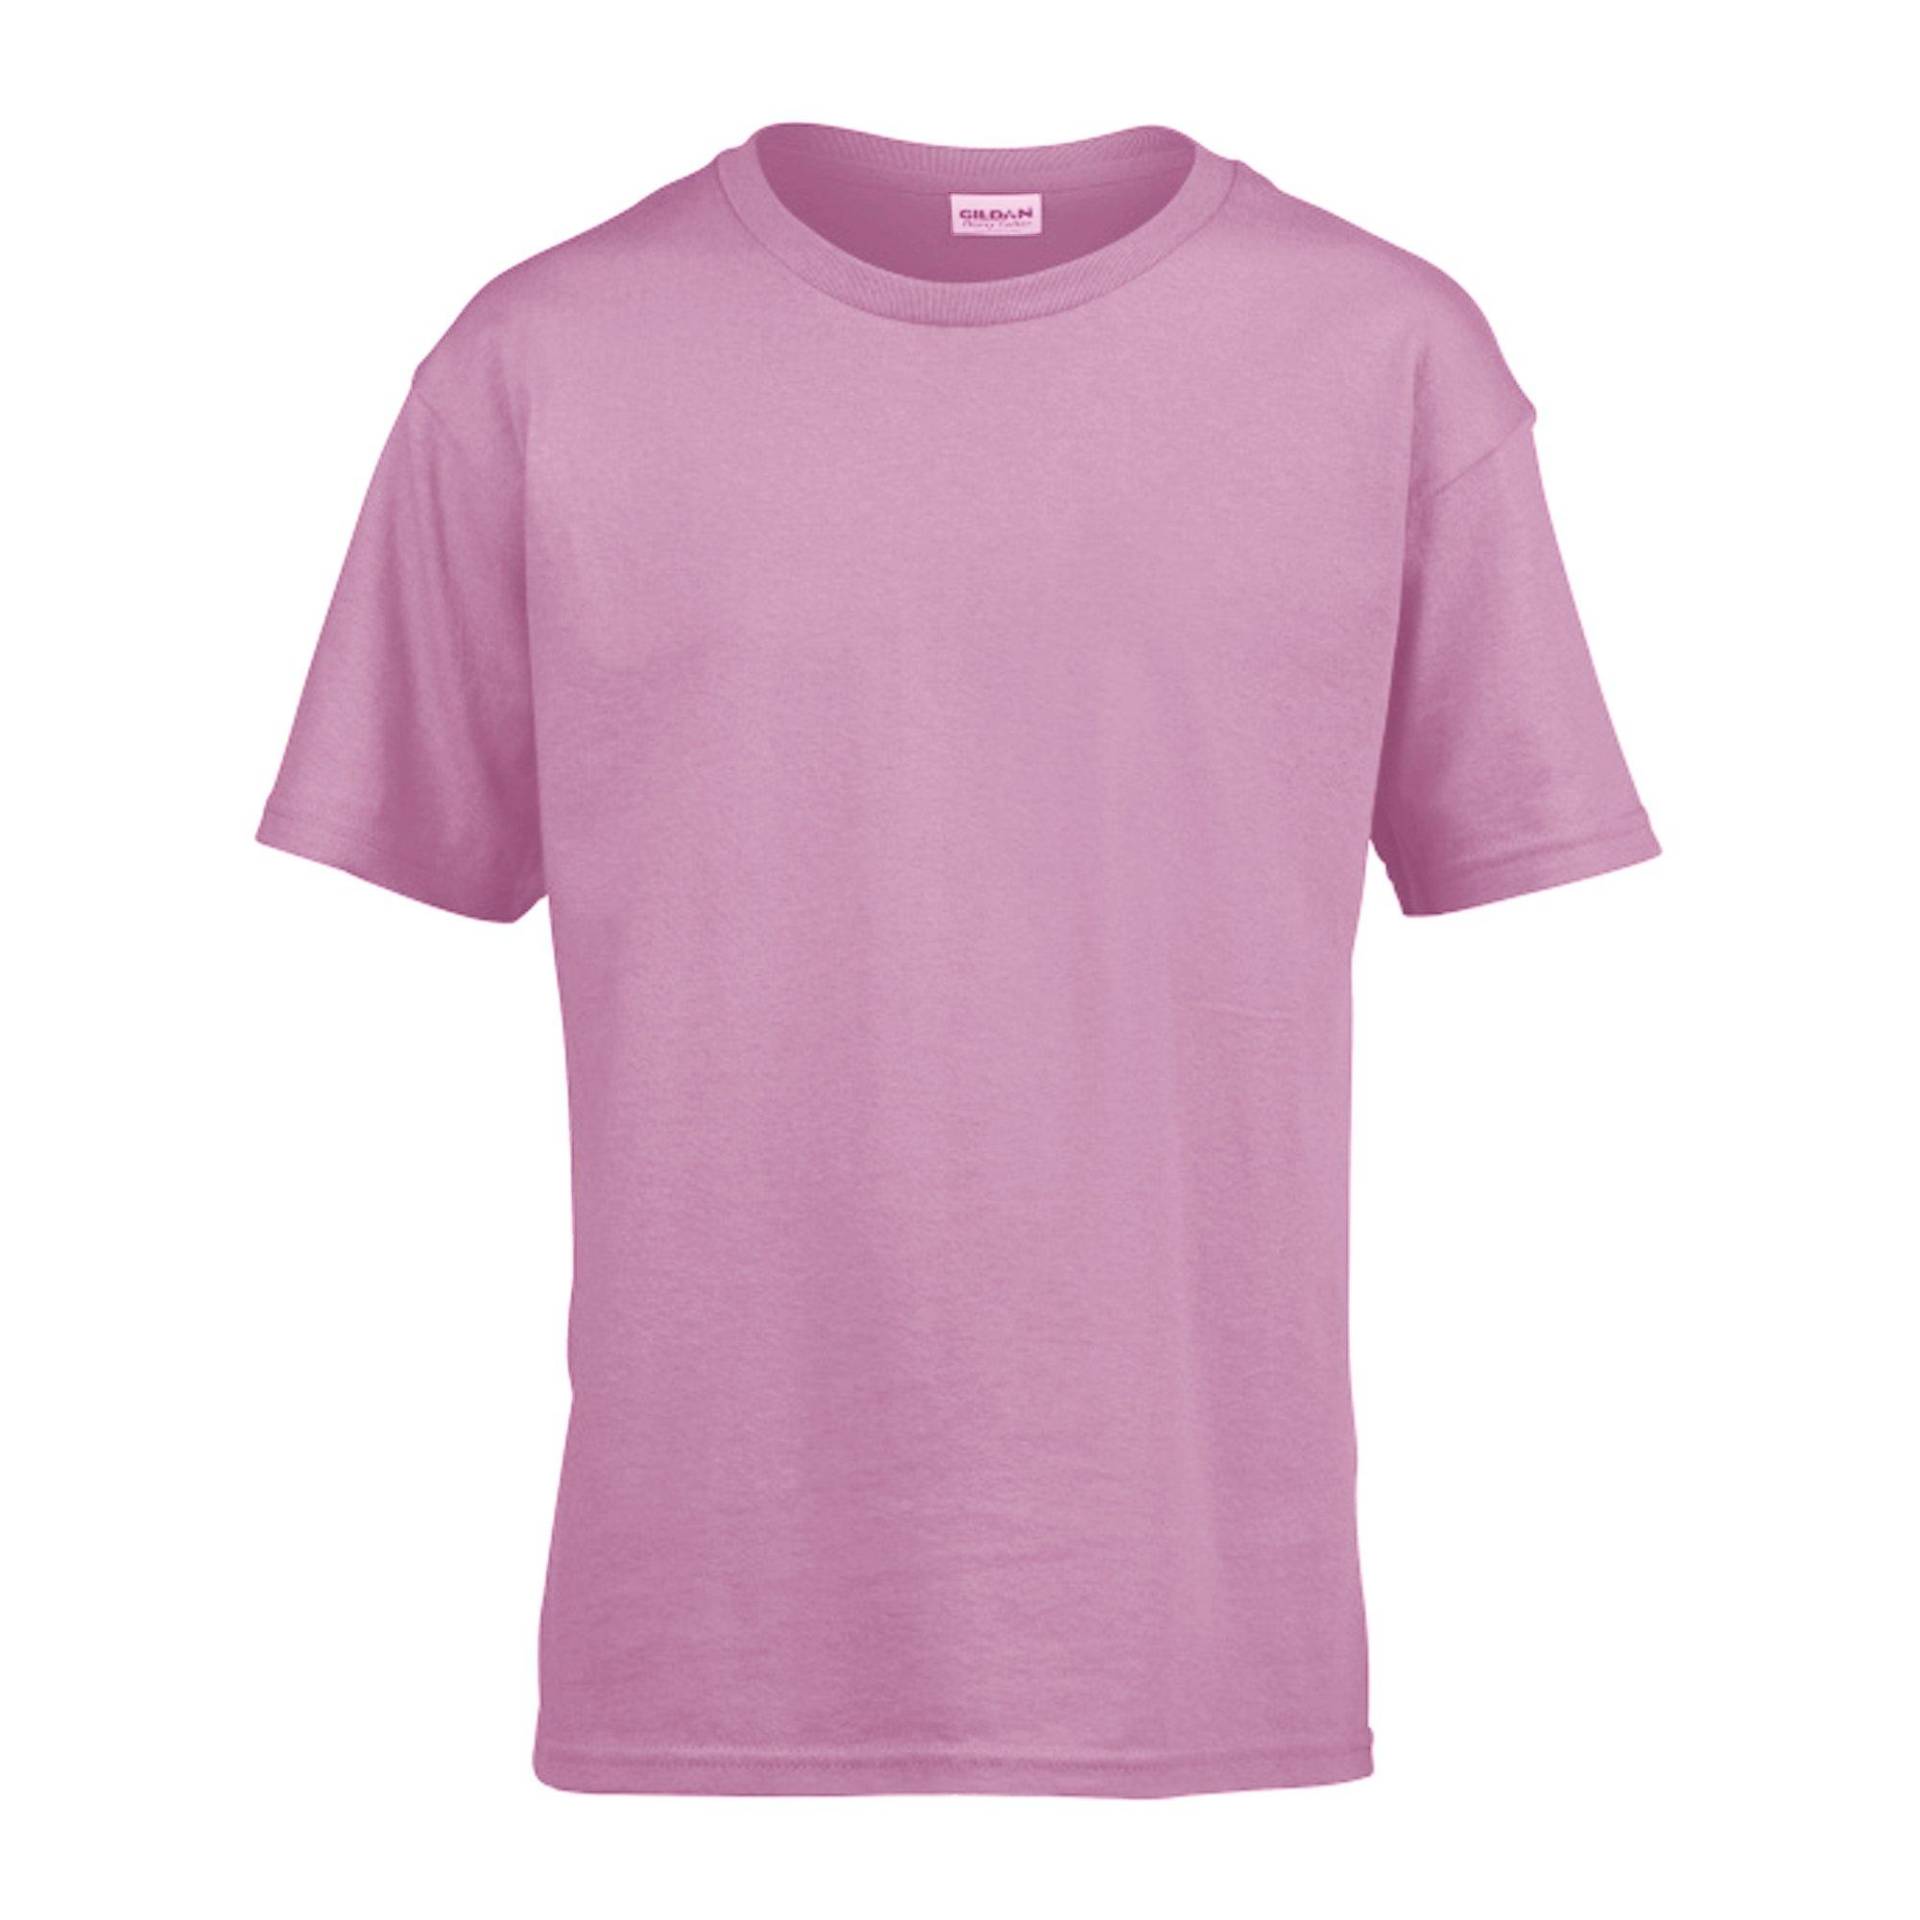 Softstyle Tshirt Herren Pink L von Gildan